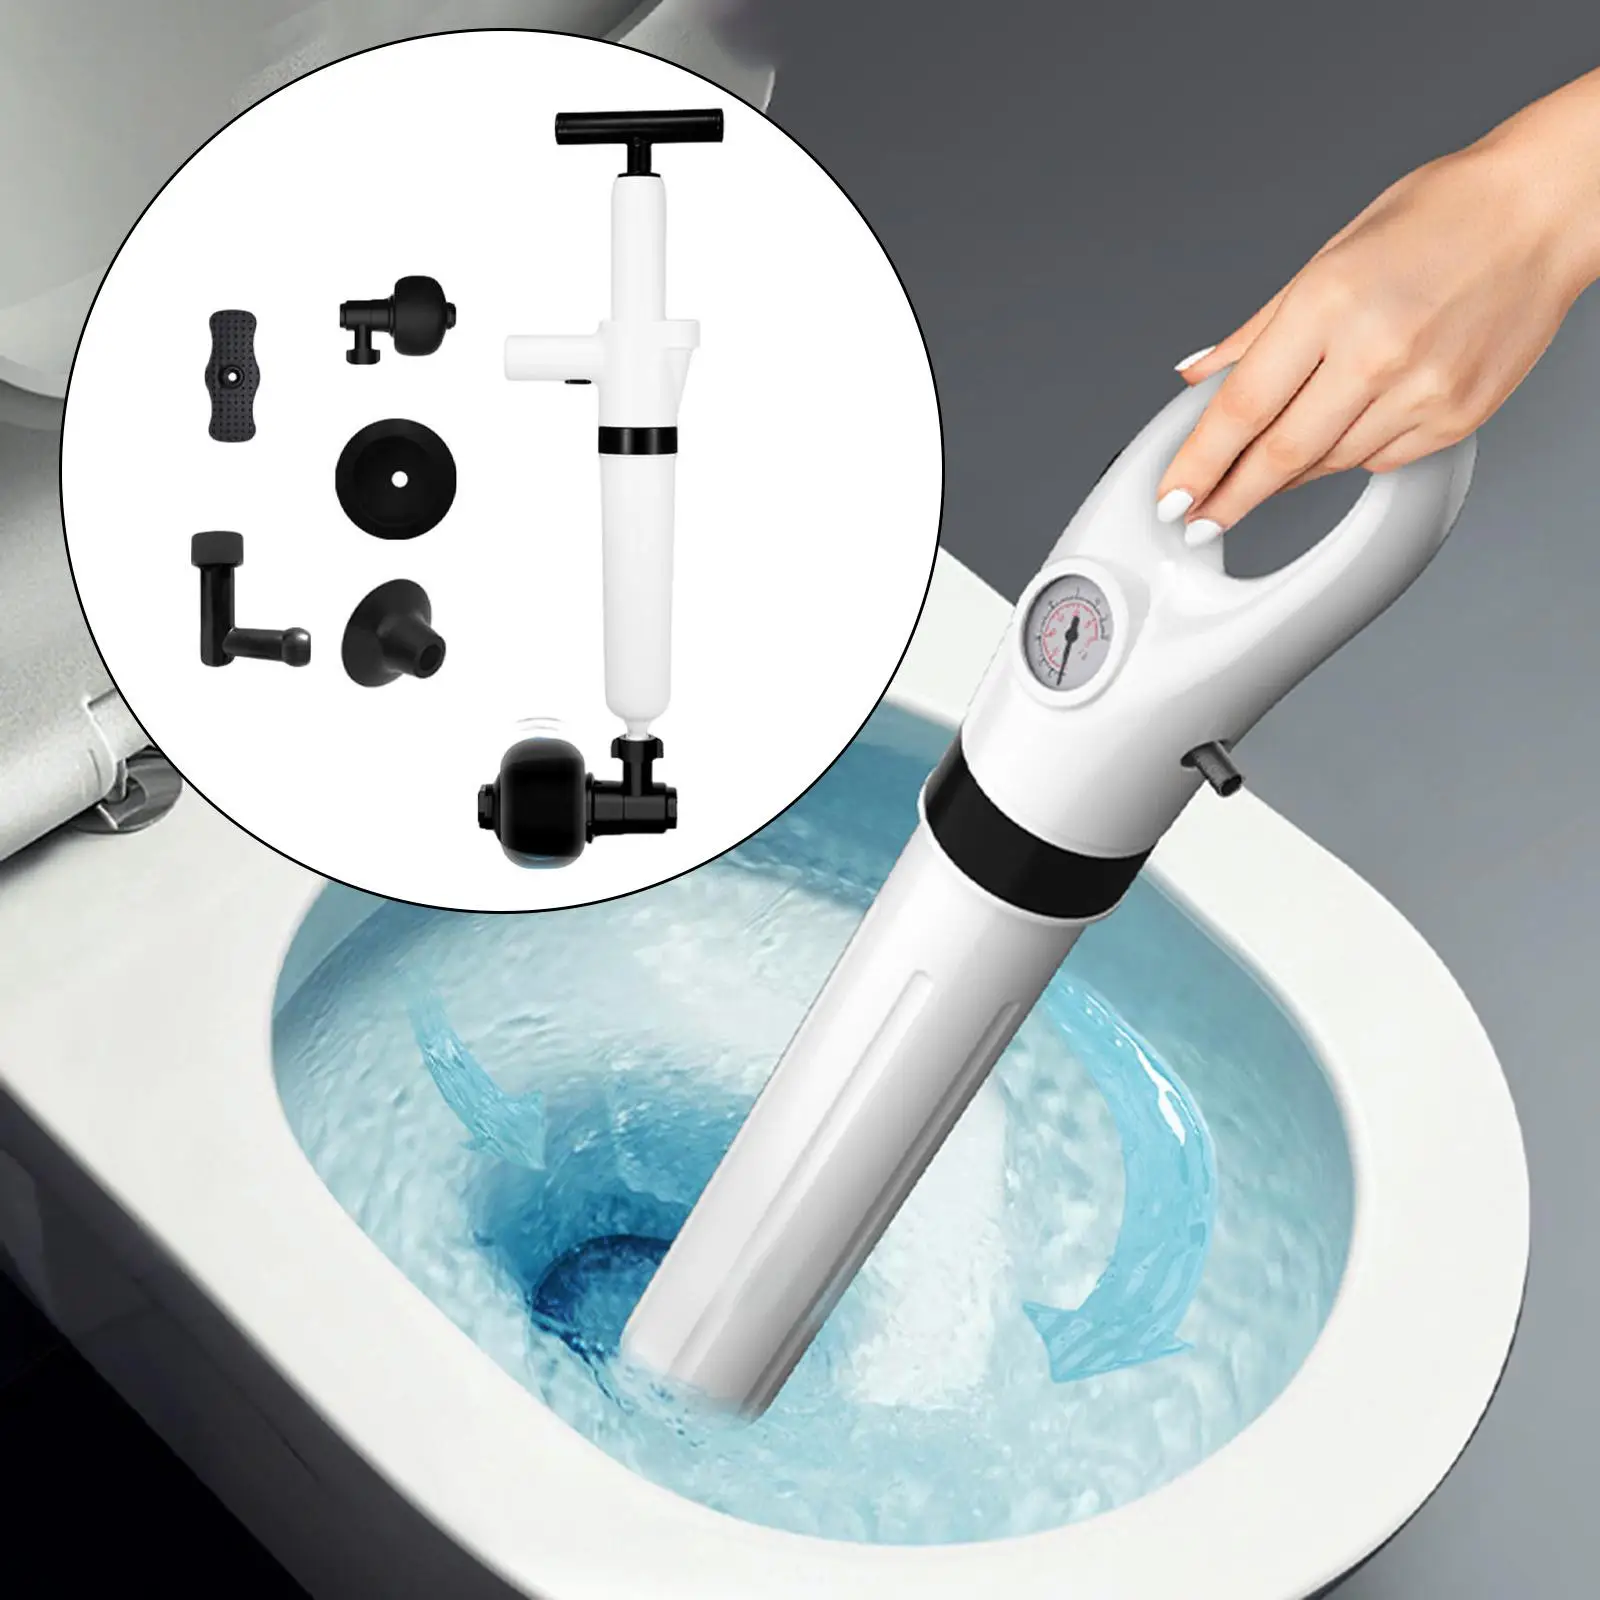 Air Drain Blaster Kit Bathroom High Pressure Toilet Plunger Kit for Shower